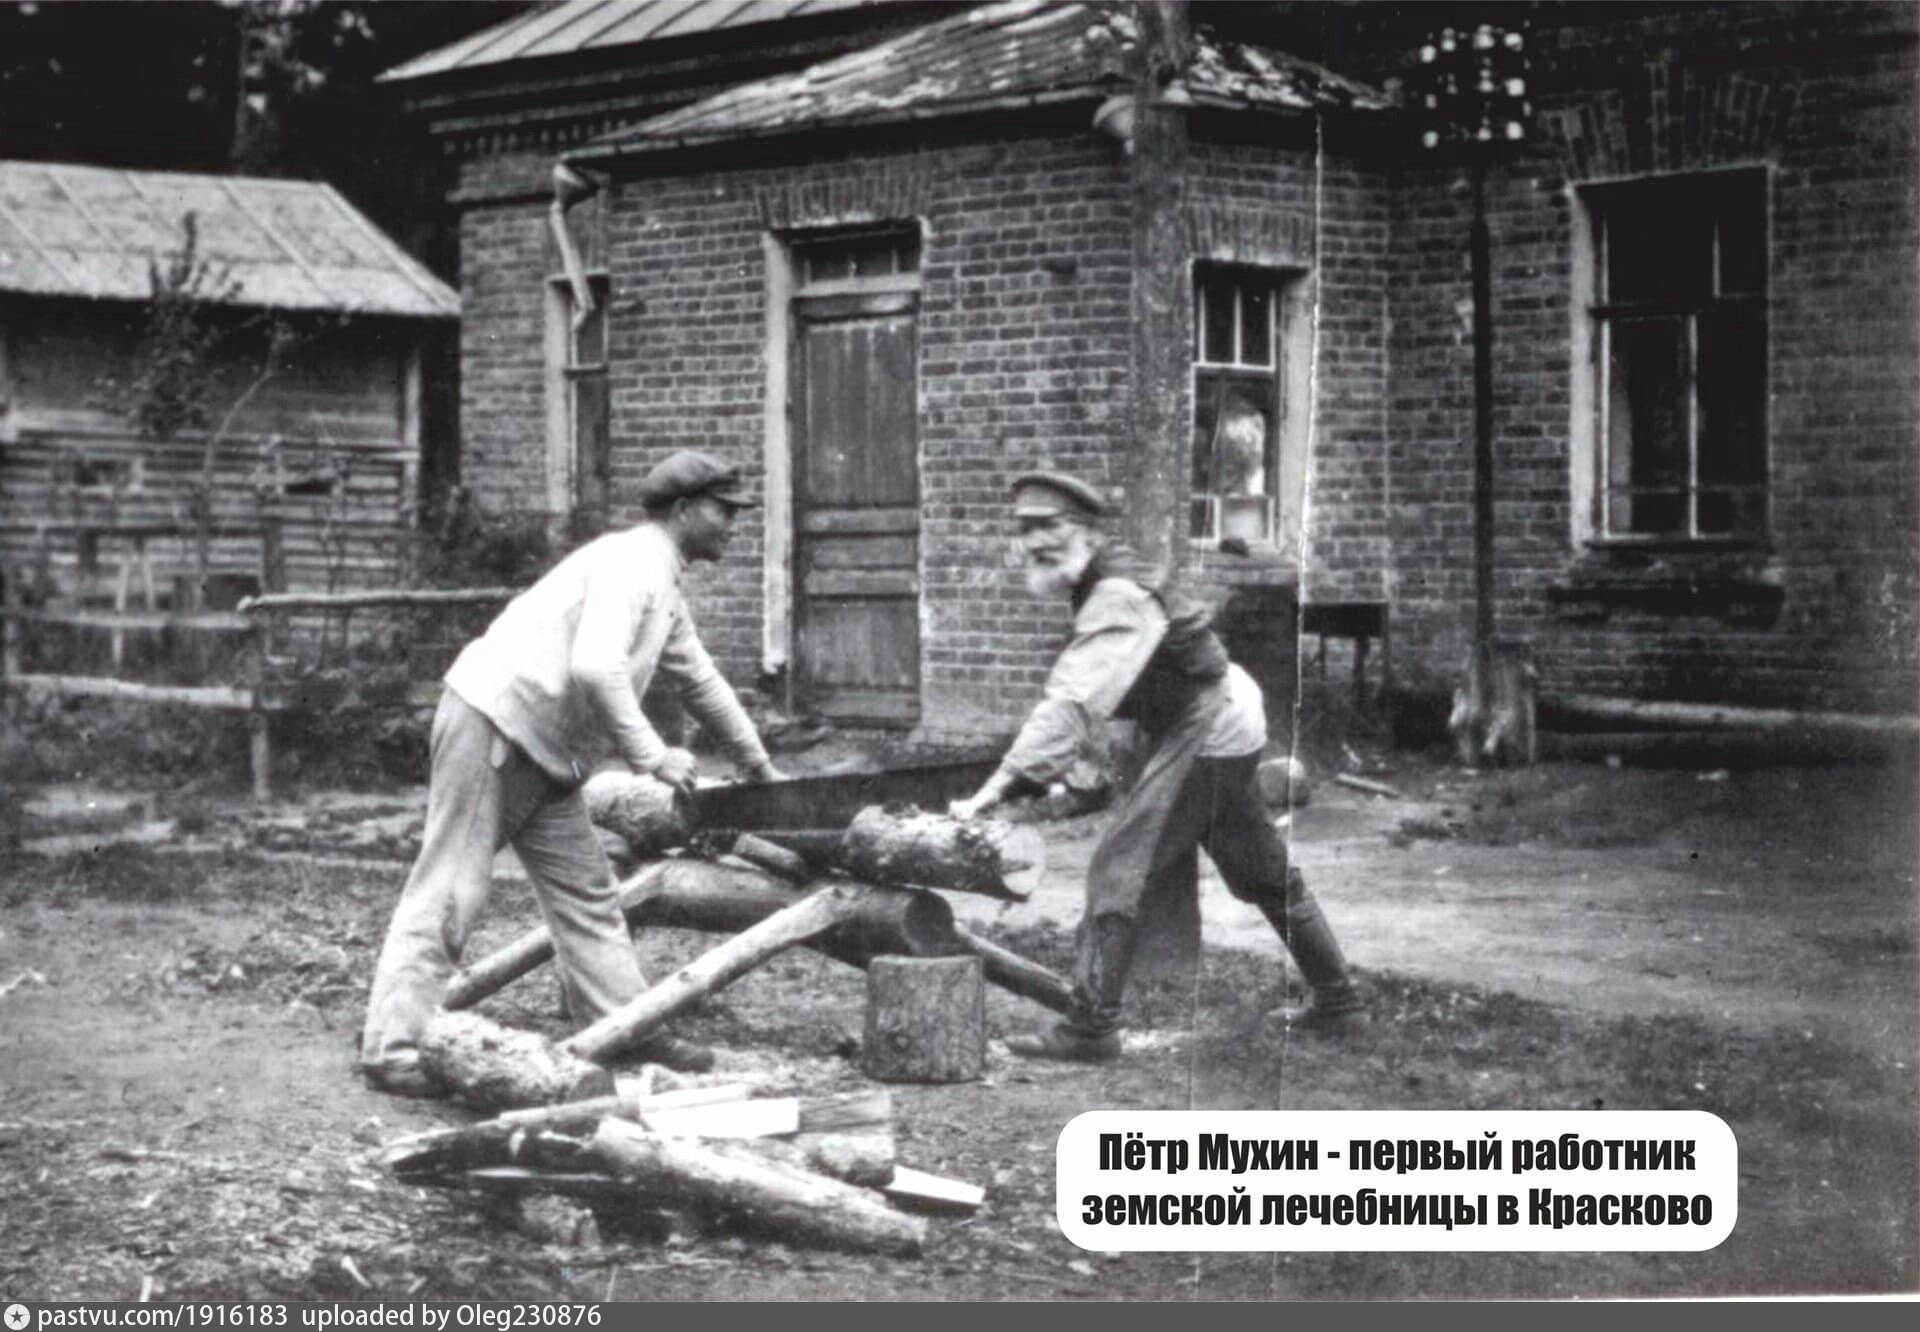 Первая лечебница в Красково 1898 год